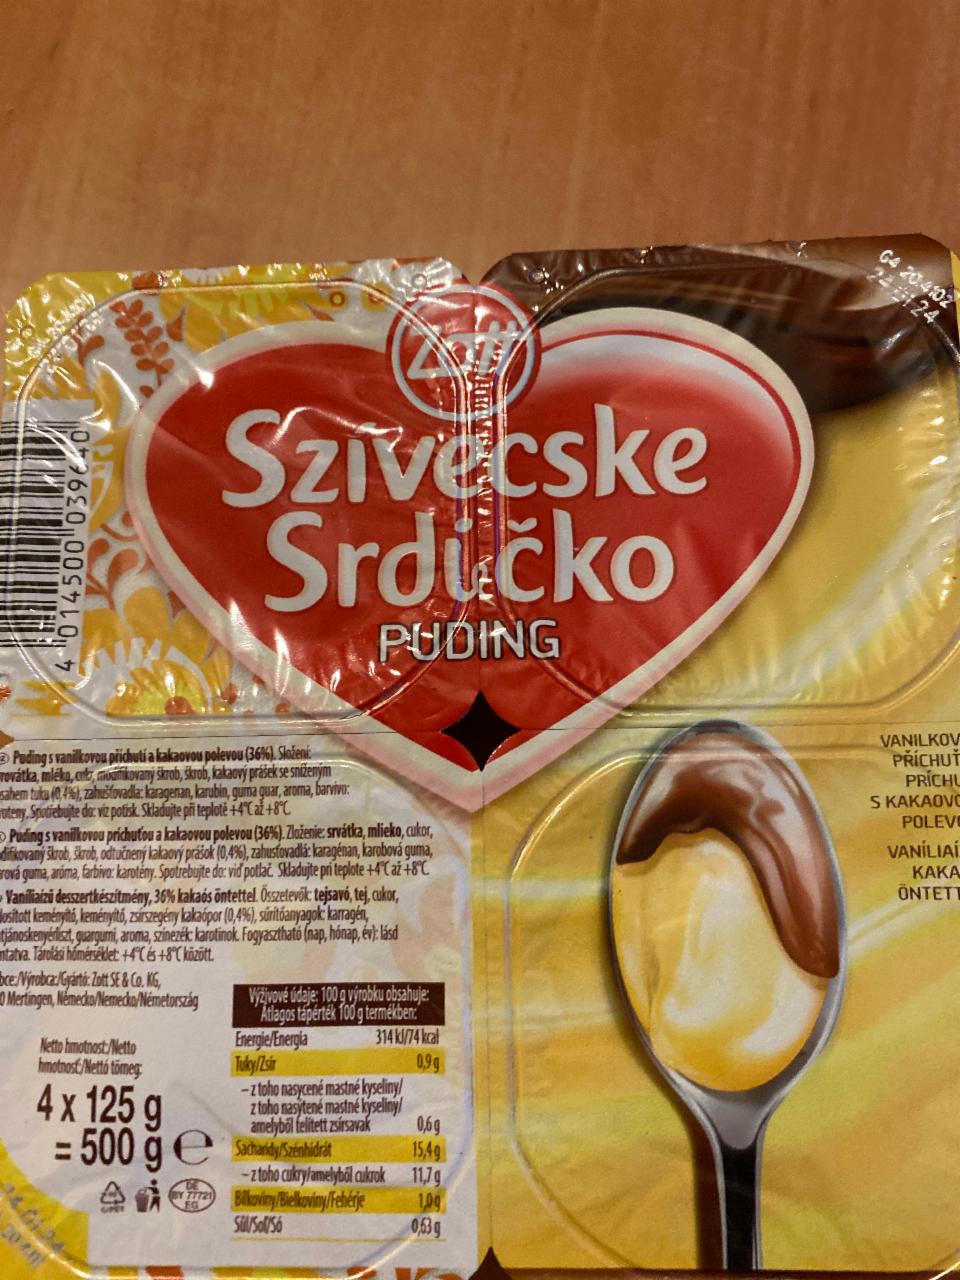 Фото - Пудинг ванильный и шоколадный Szivecske Srdicko puding Zott